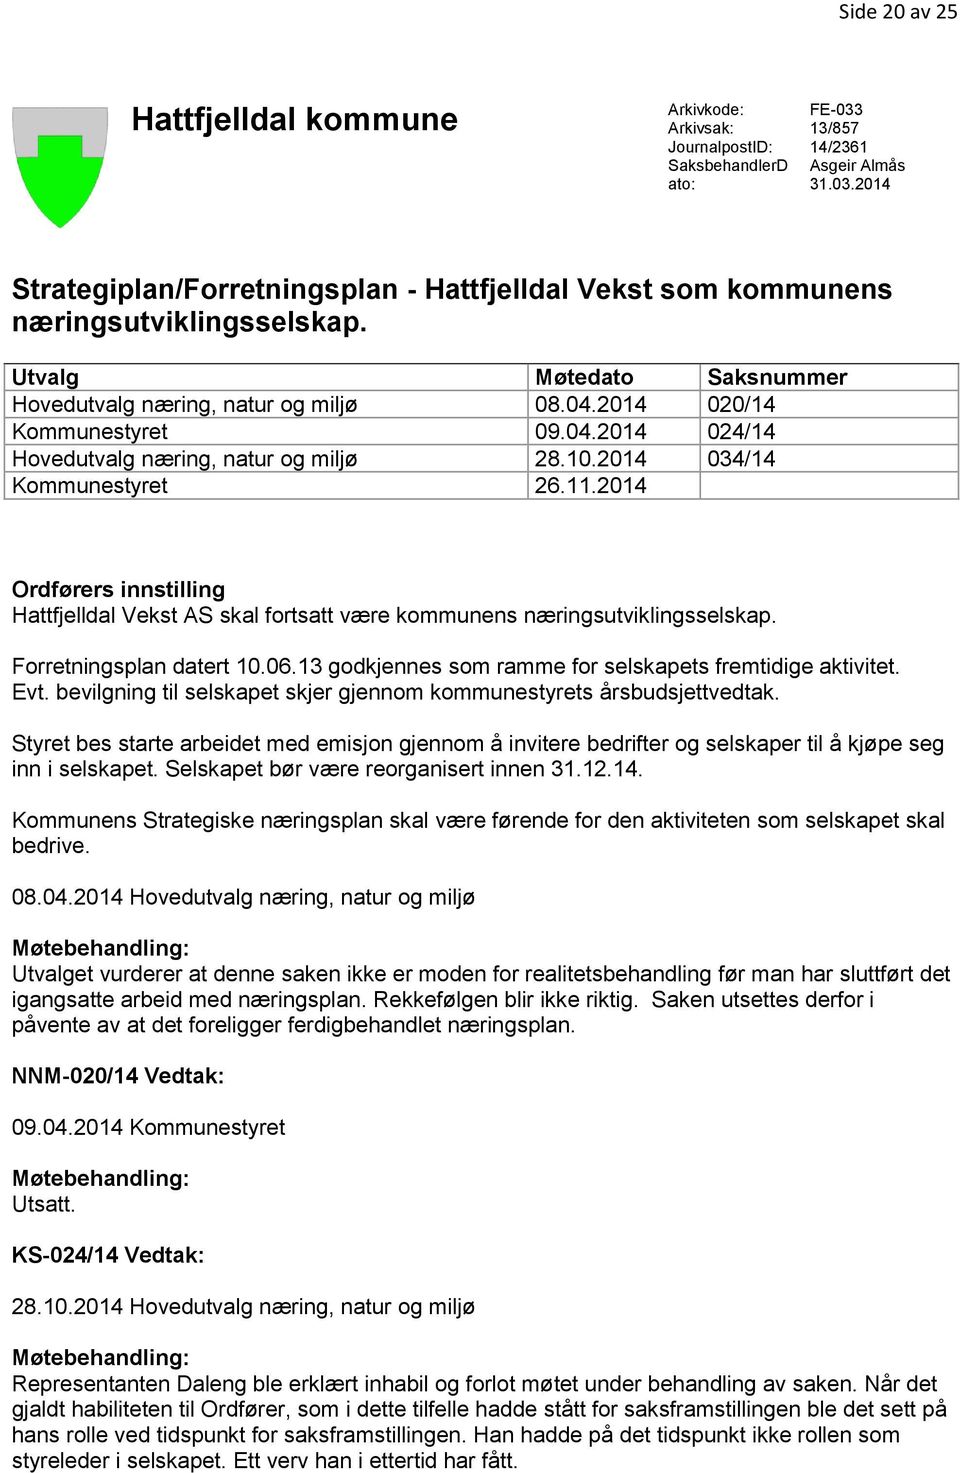 2014 Ordførers innstilling Hattfjelldal Vekst AS skal fortsatt være kommunens næringsutviklingsselskap. Forretningsplan datert 10.06.13 godkjennes som ramme for selskapets fremtidige aktivitet. Evt.